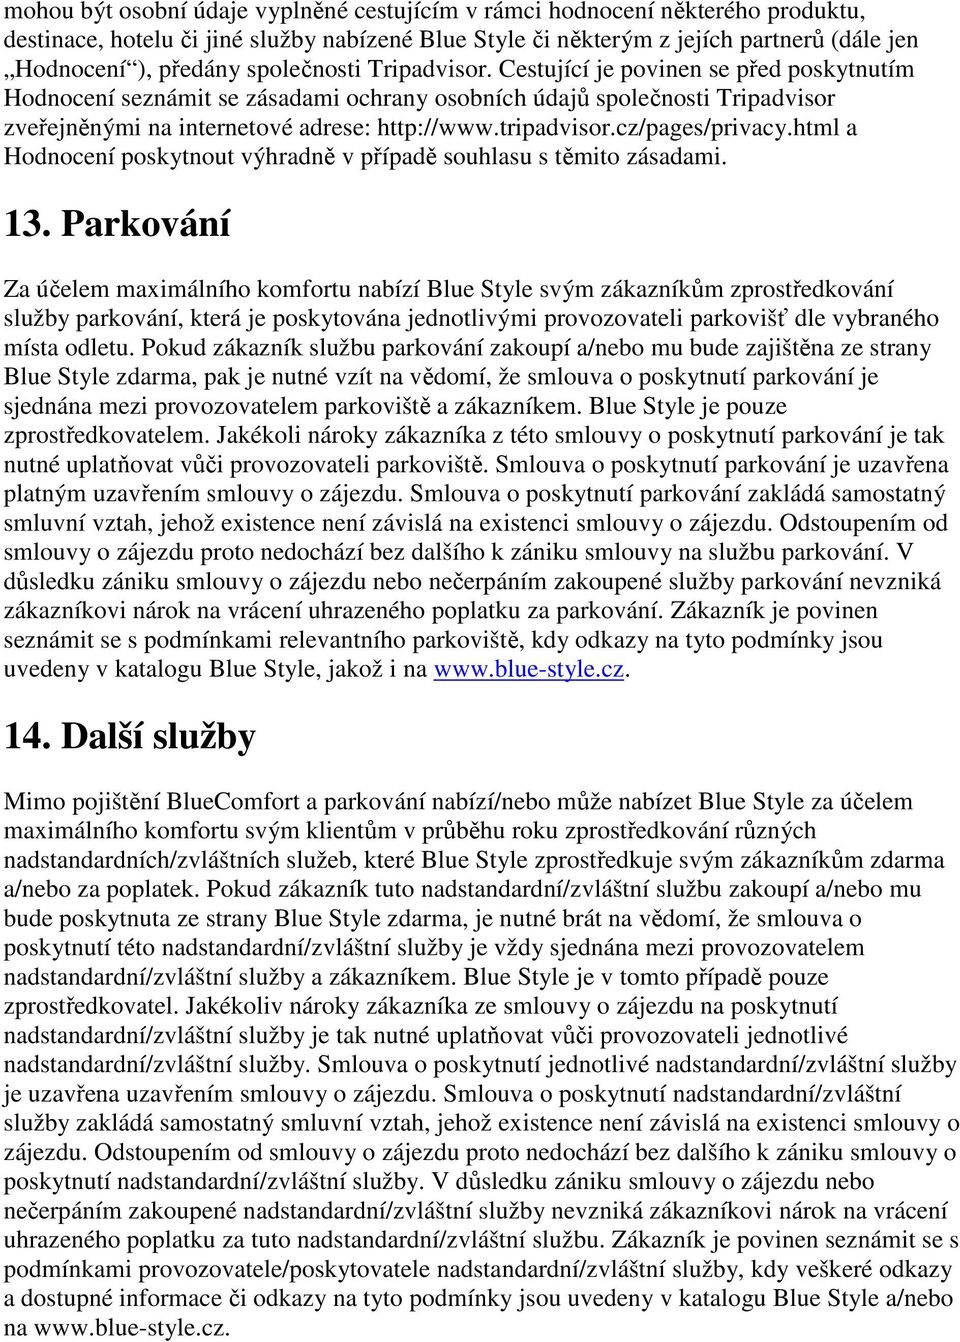 tripadvisor.cz/pages/privacy.html a Hodnocení poskytnout výhradně v případě souhlasu s těmito zásadami. 13.